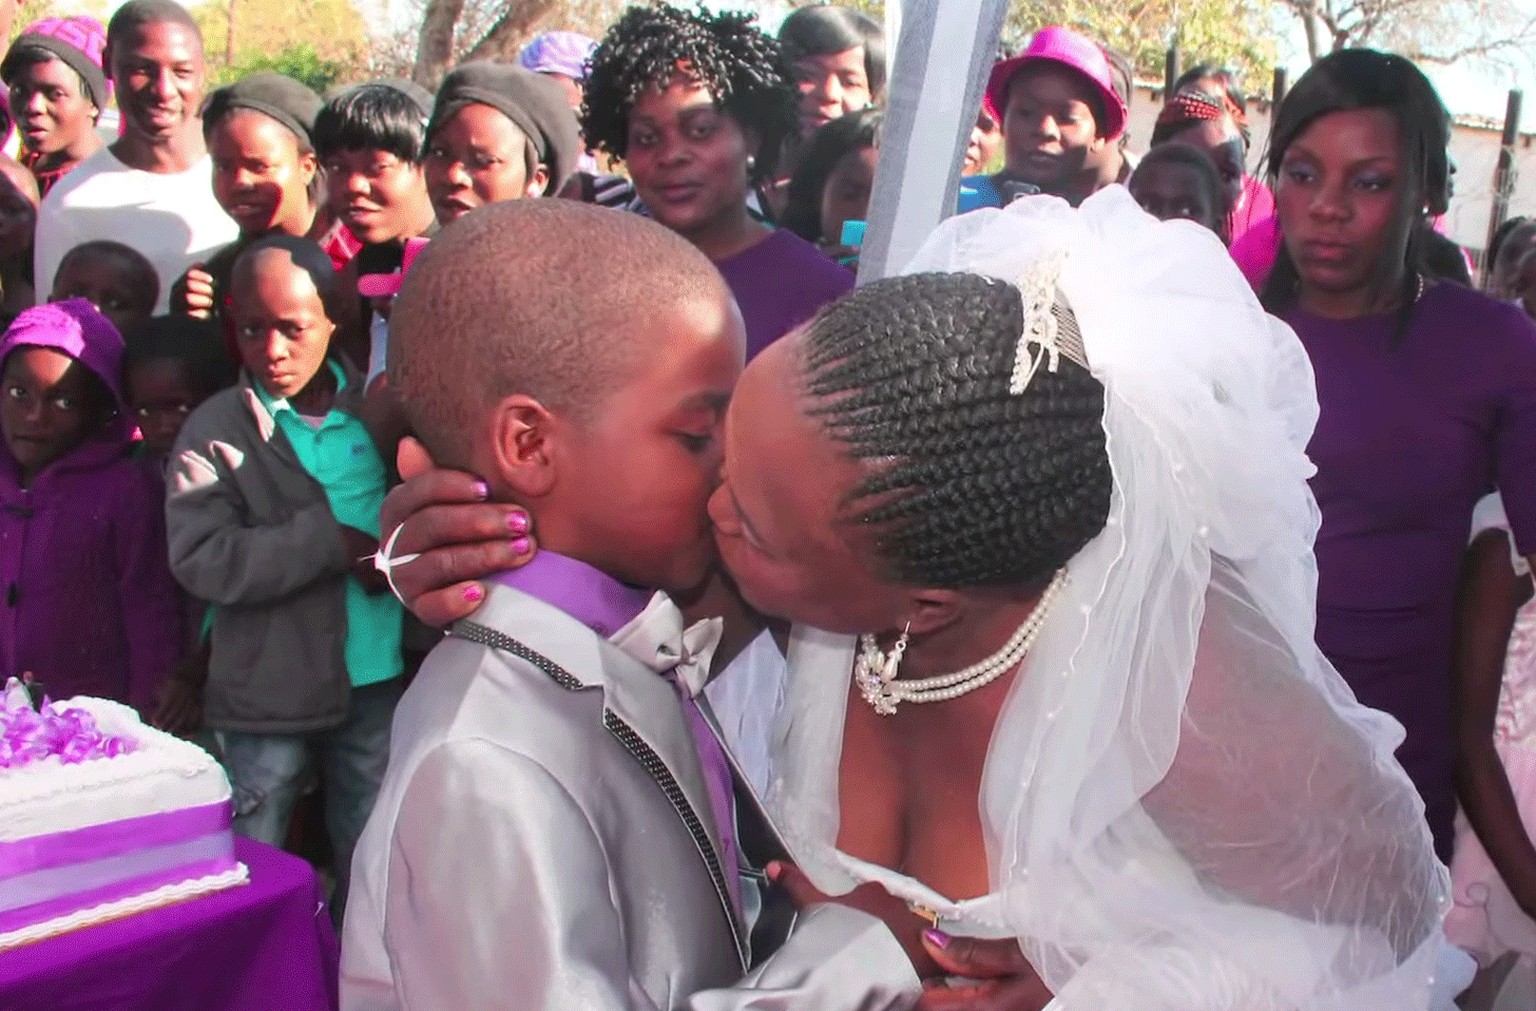 Die Gesichter der Zuschauer legen nahe, dass so eine Hochzeit auch in Südafrika nicht alltäglich ist. (Beachten Sie: Von hinten links erntet der Bub scheinbar Hochachtung.)